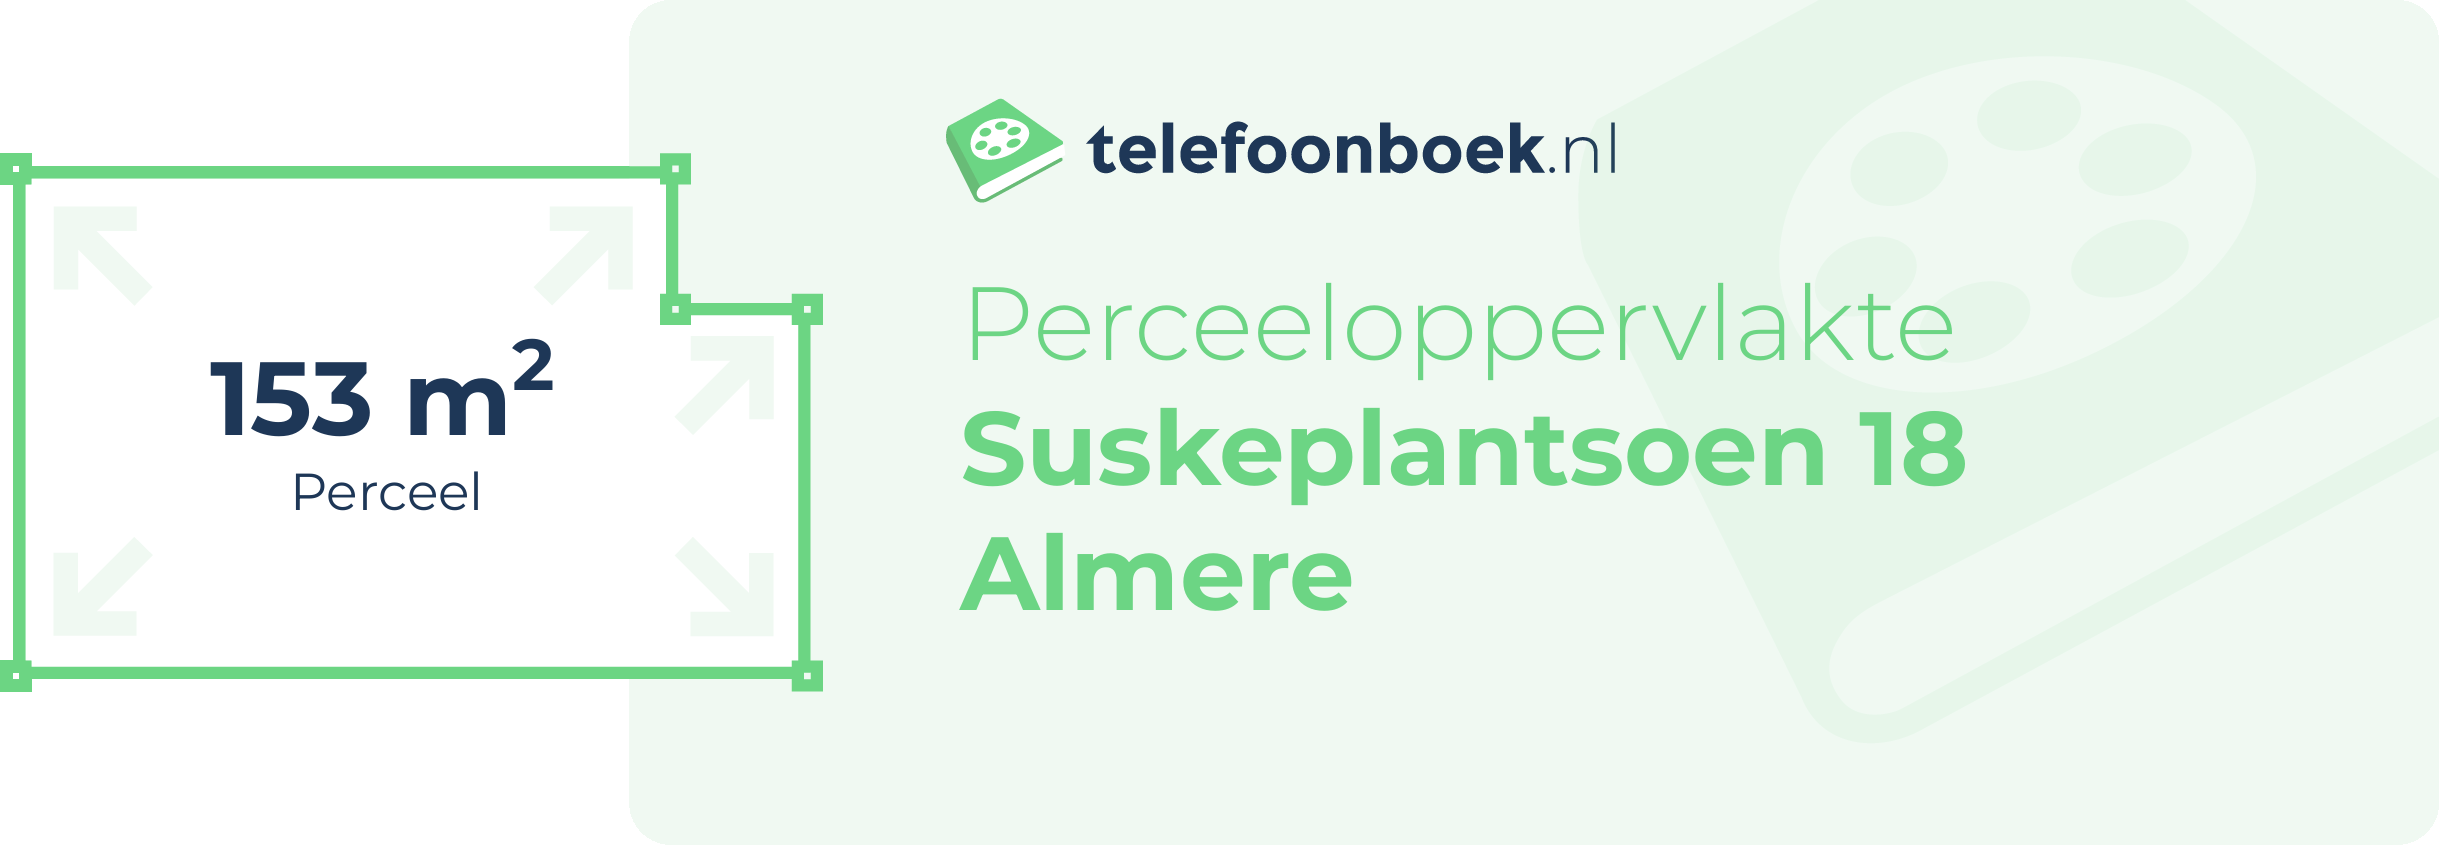 Perceeloppervlakte Suskeplantsoen 18 Almere